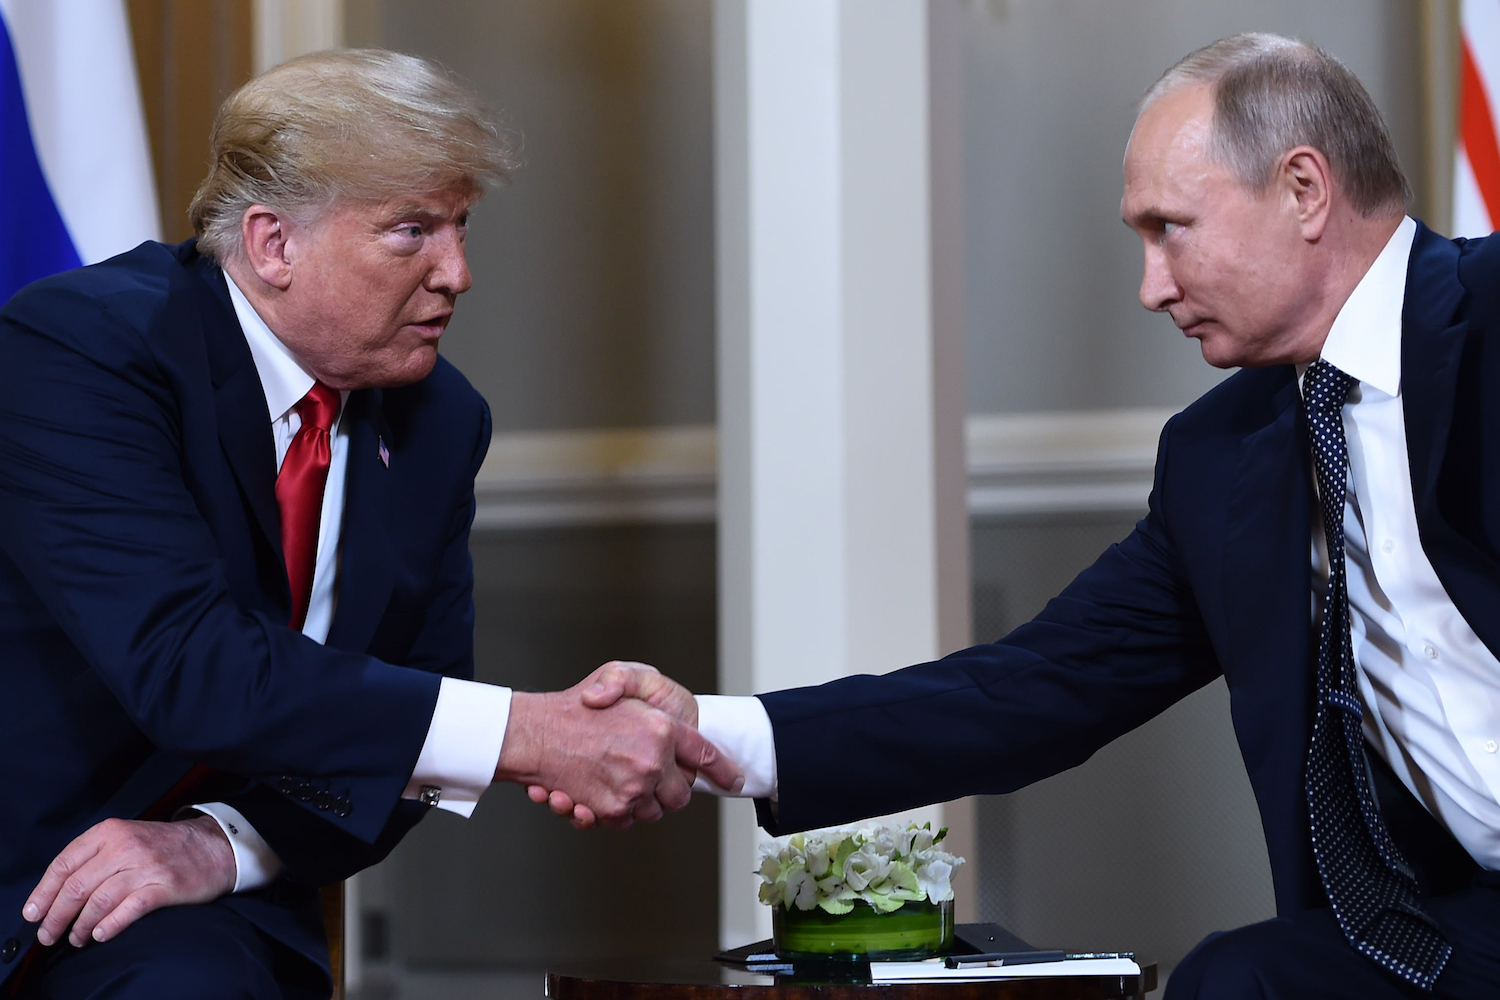 Cápsula Mirada Crítica - EUA y Rusia: del "kompromat" al "te compro" Trump - 25/07/2018